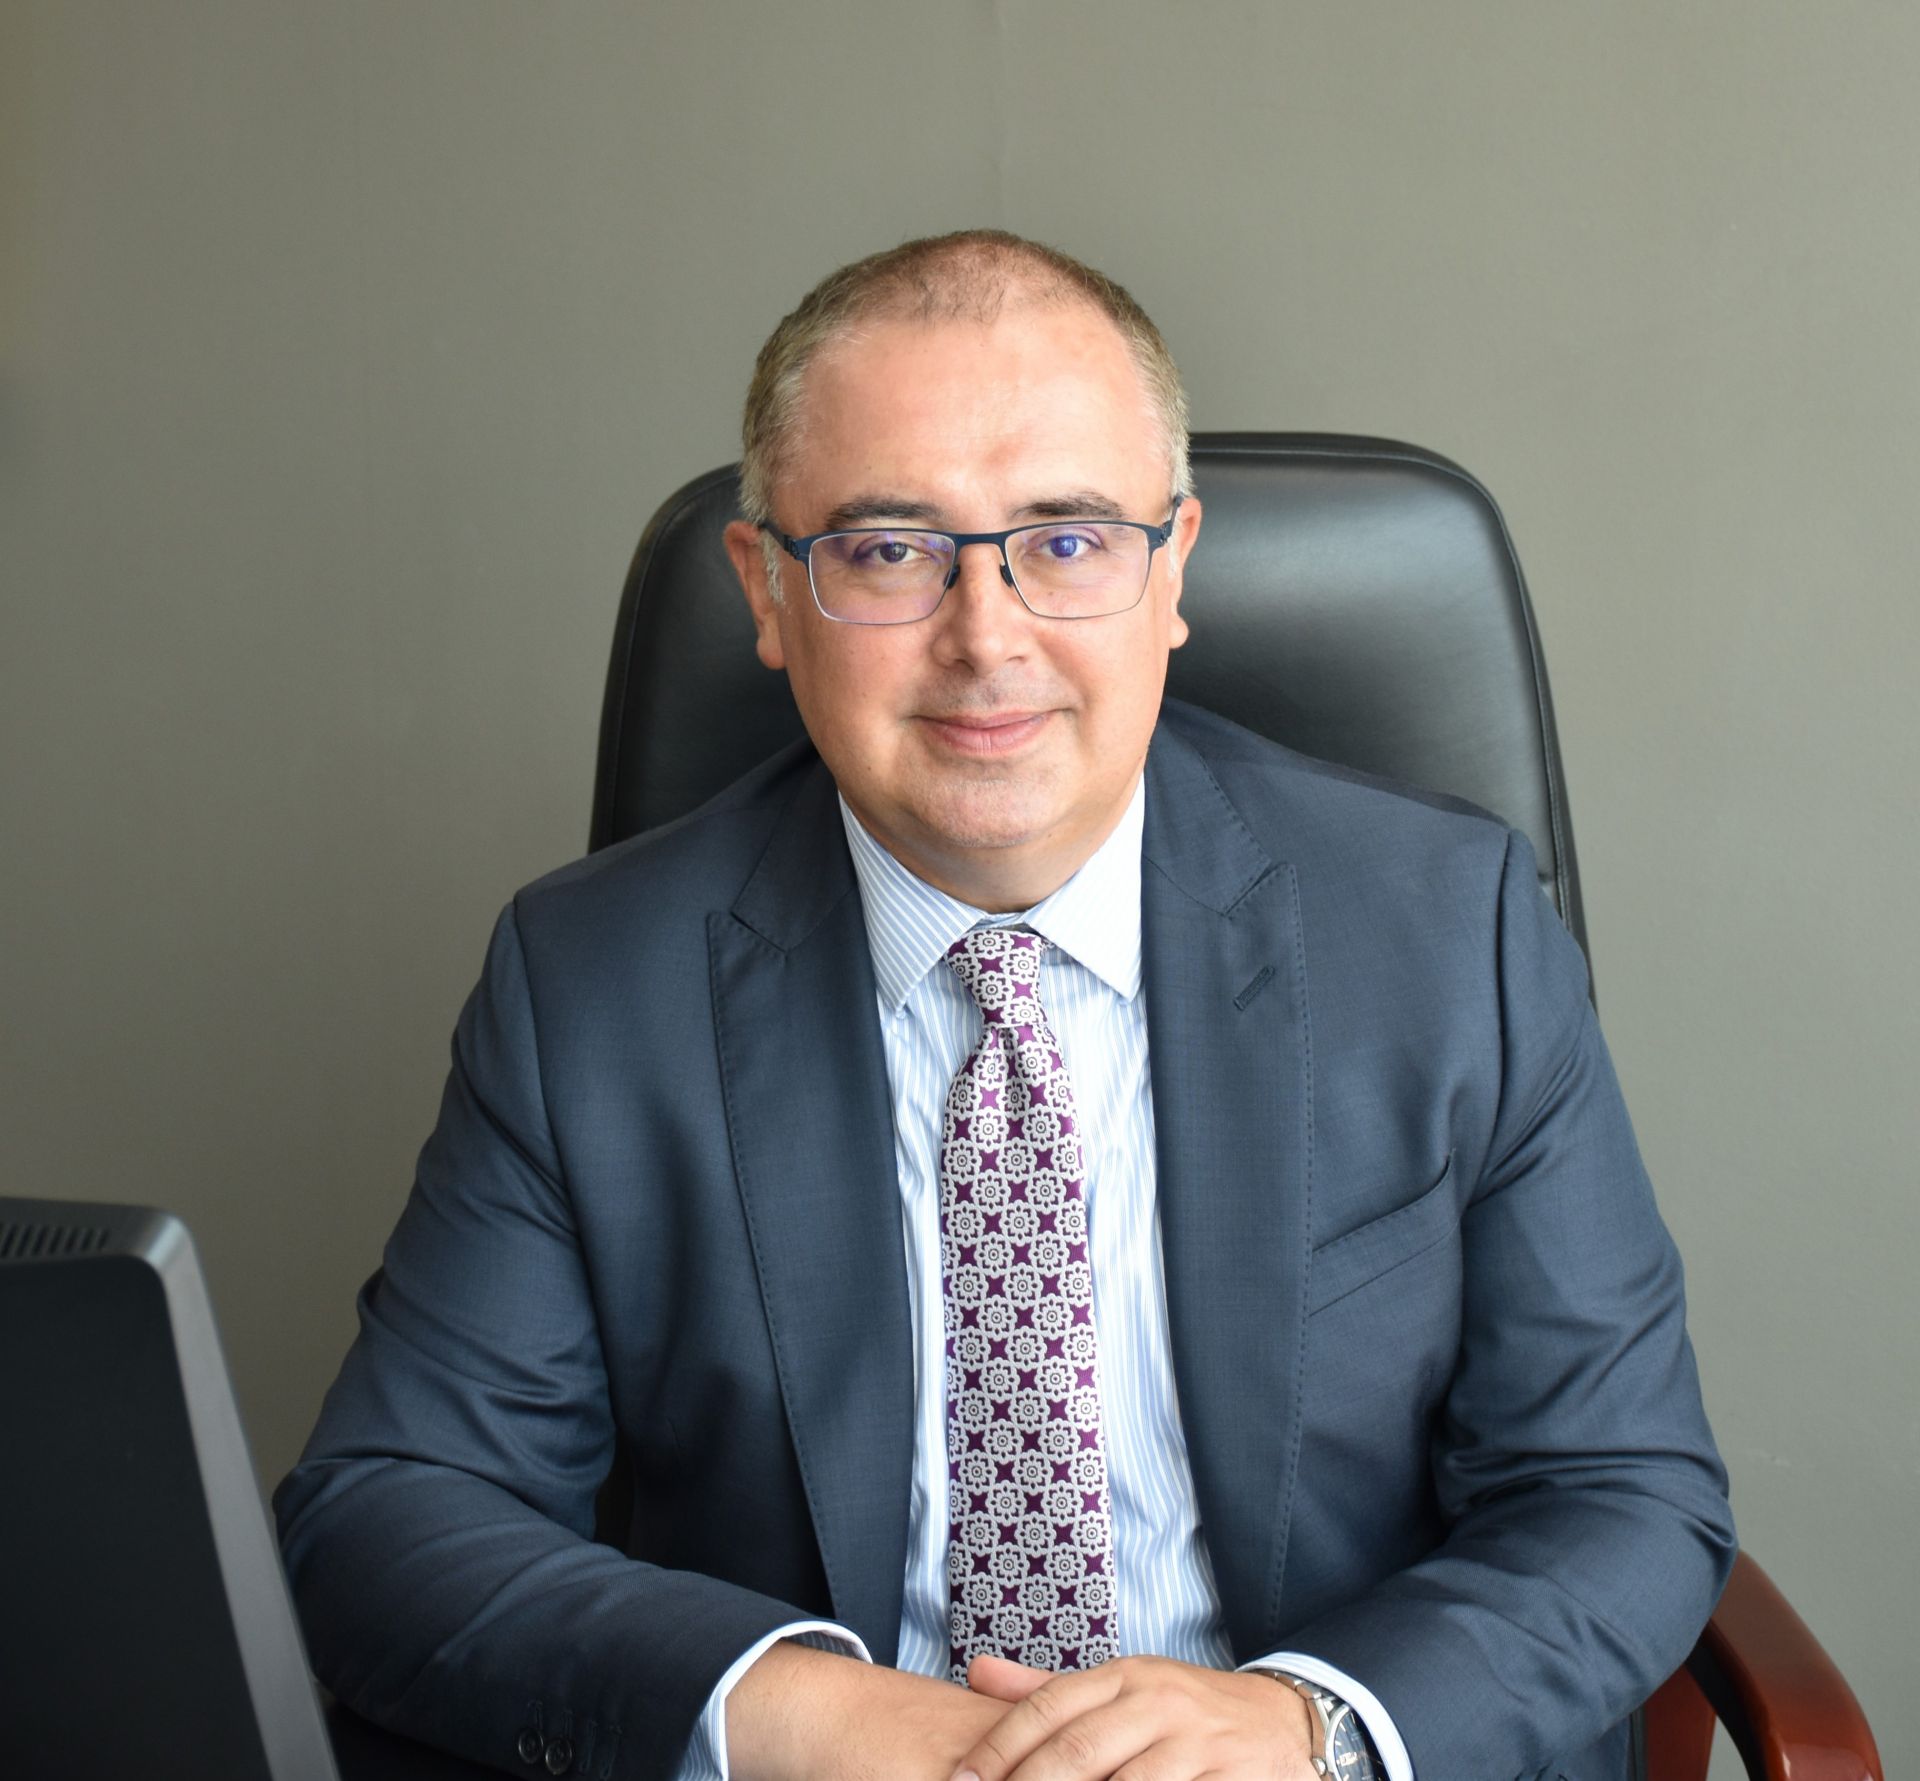 На 23 юли 2020 г. Владимир Савов е избран от Народното събрание на Република България за заместник-председател на КФН, ръководещ управление „Застрахователен надзор“, с 6-годишен мандат.  Г-н Савов притежава магистърска степен по „Международни икономически